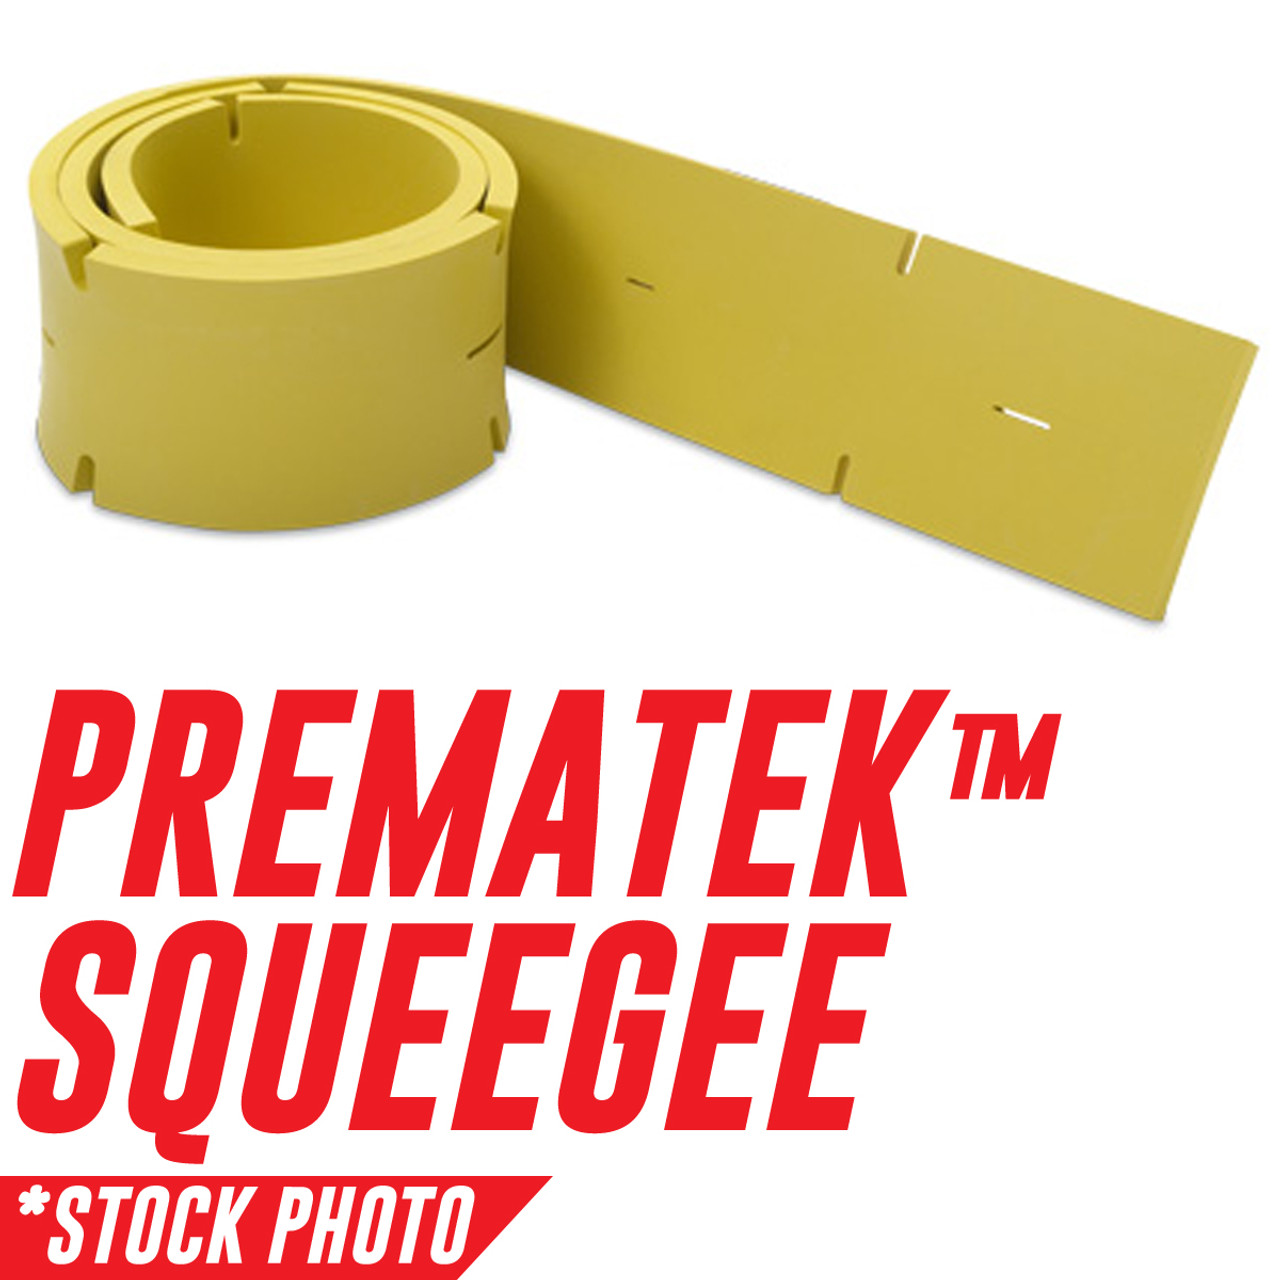 390-754L: Squeegee, Rear, Prematek fits Factory Cat Models 390, 420, 430, 490, 550